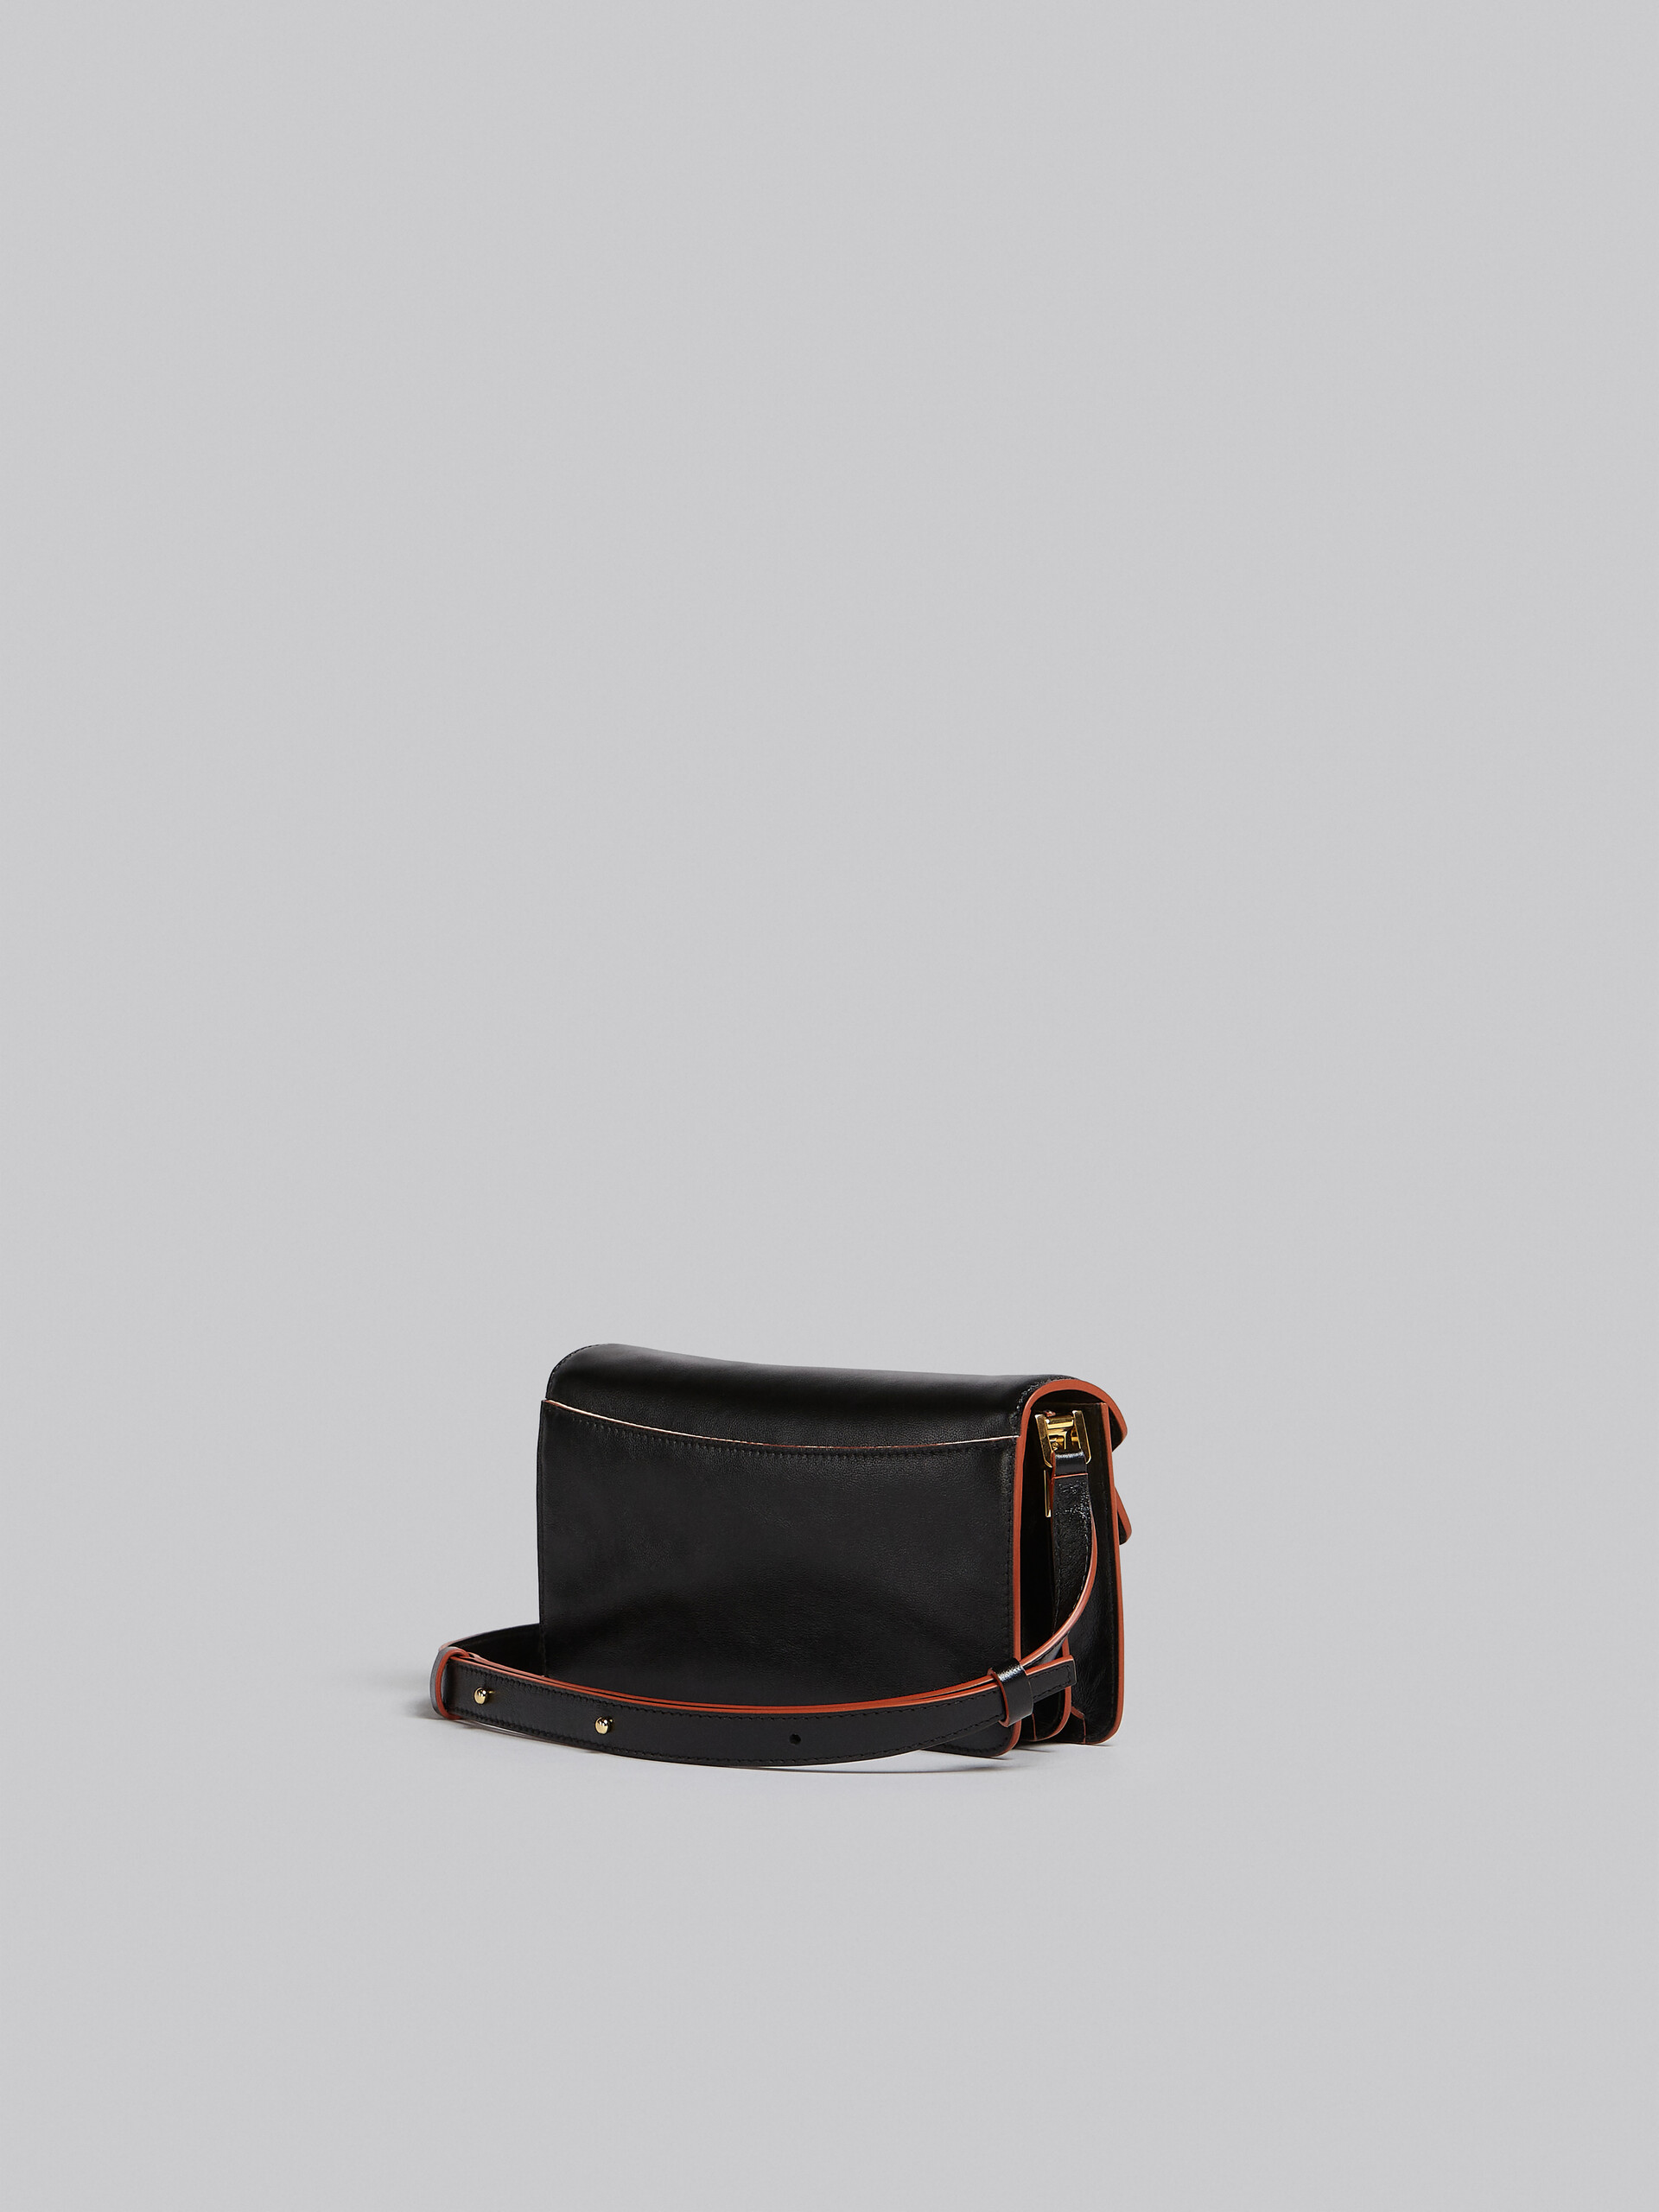 Trunk Soft Bag E/W in black leather - Shoulder Bag - Image 3